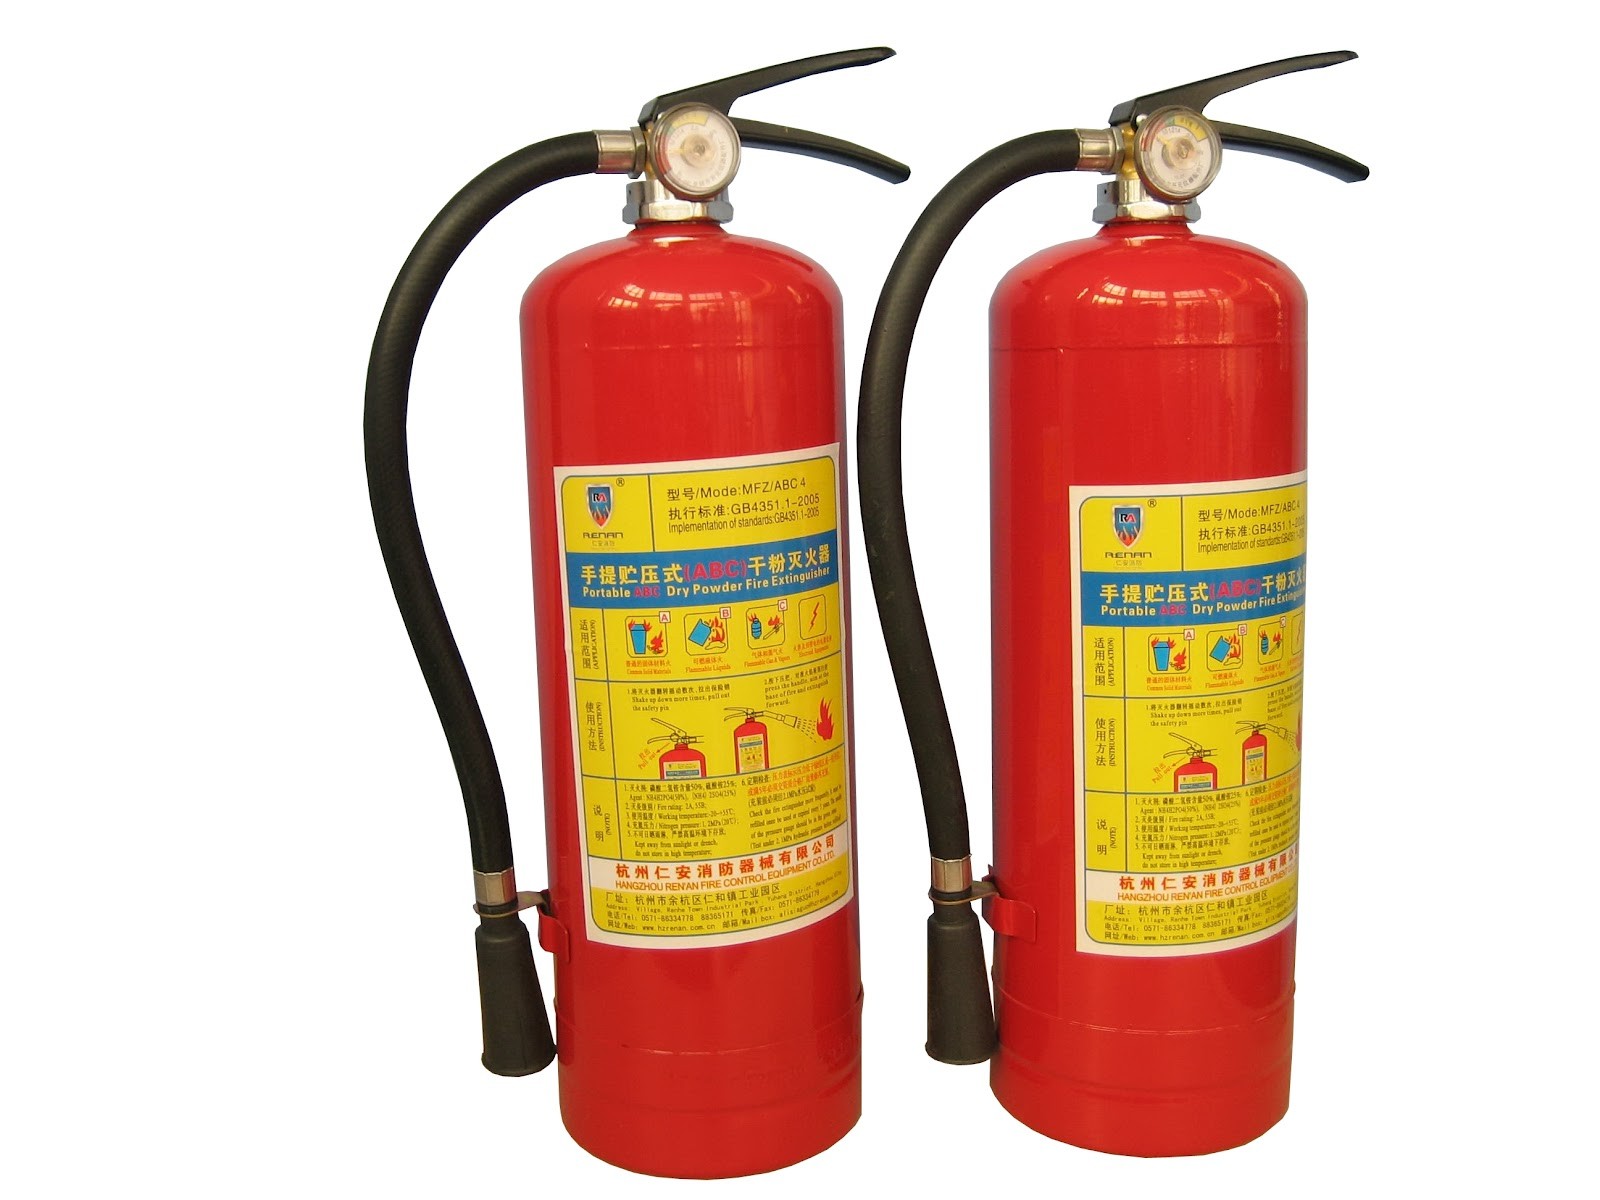 Bình cứu hỏa là một sản phẩm nằm trong thiết bị chữa cháy trực tiếp